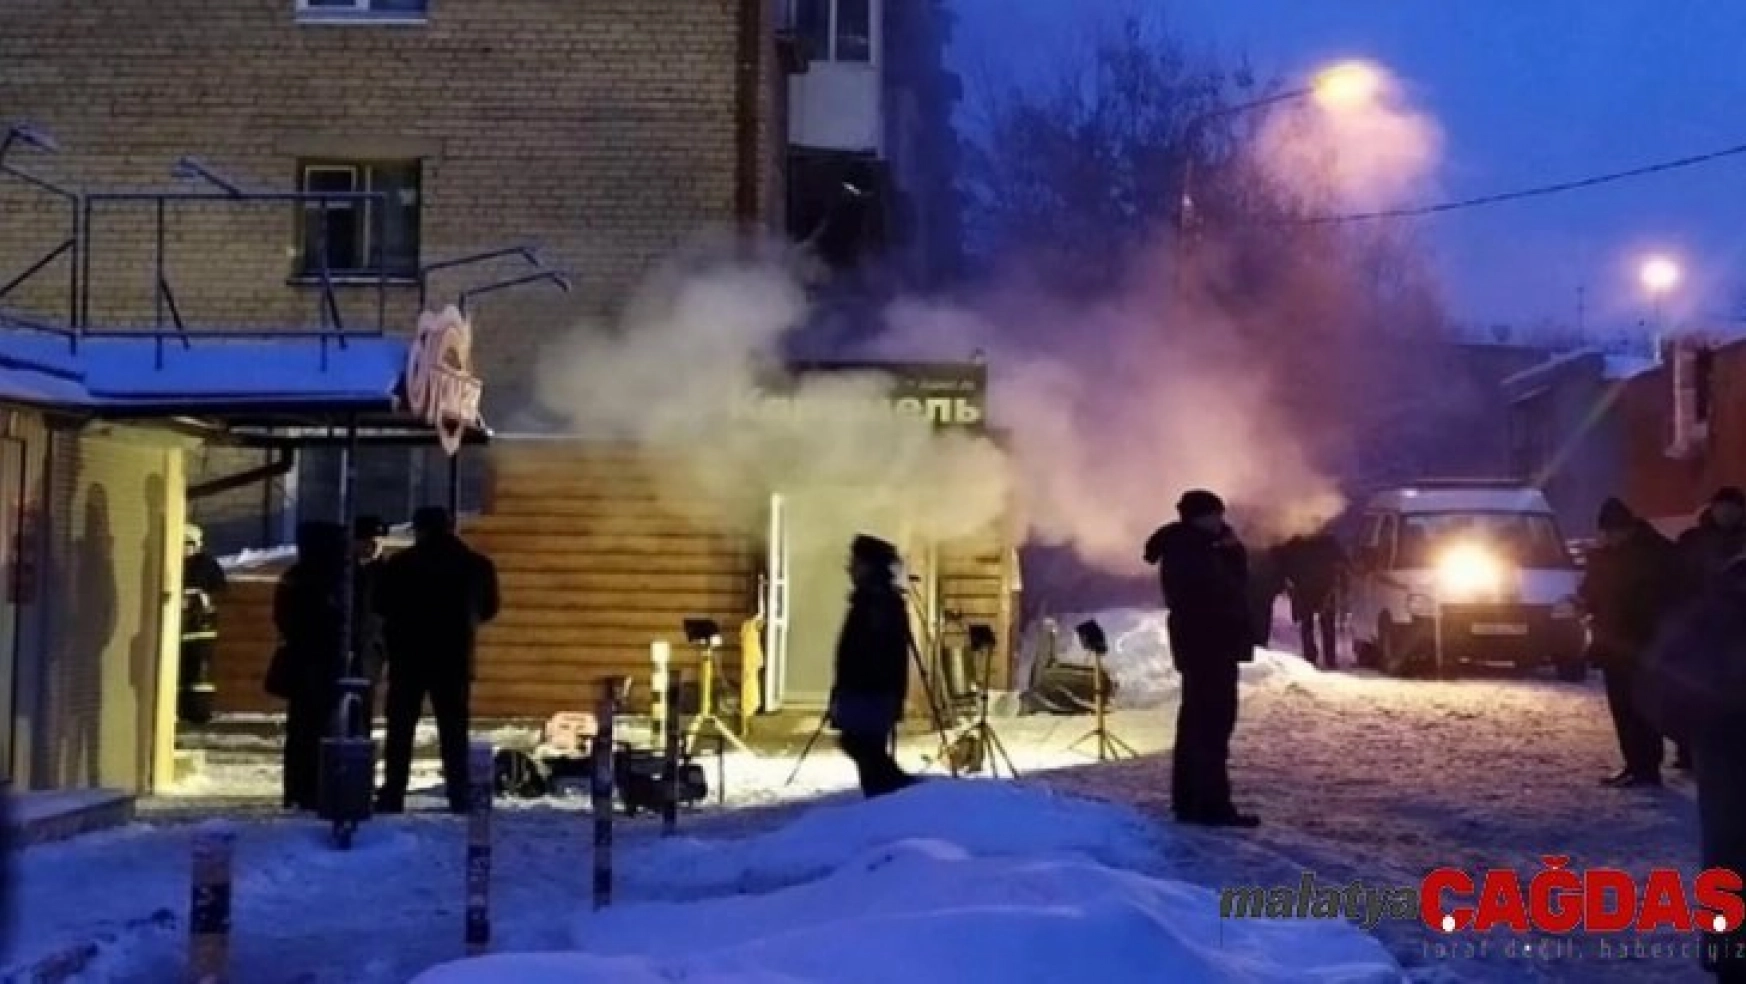 Rusya'da otelin yanından geçen sıcak su borusu patladı: 5 ölü